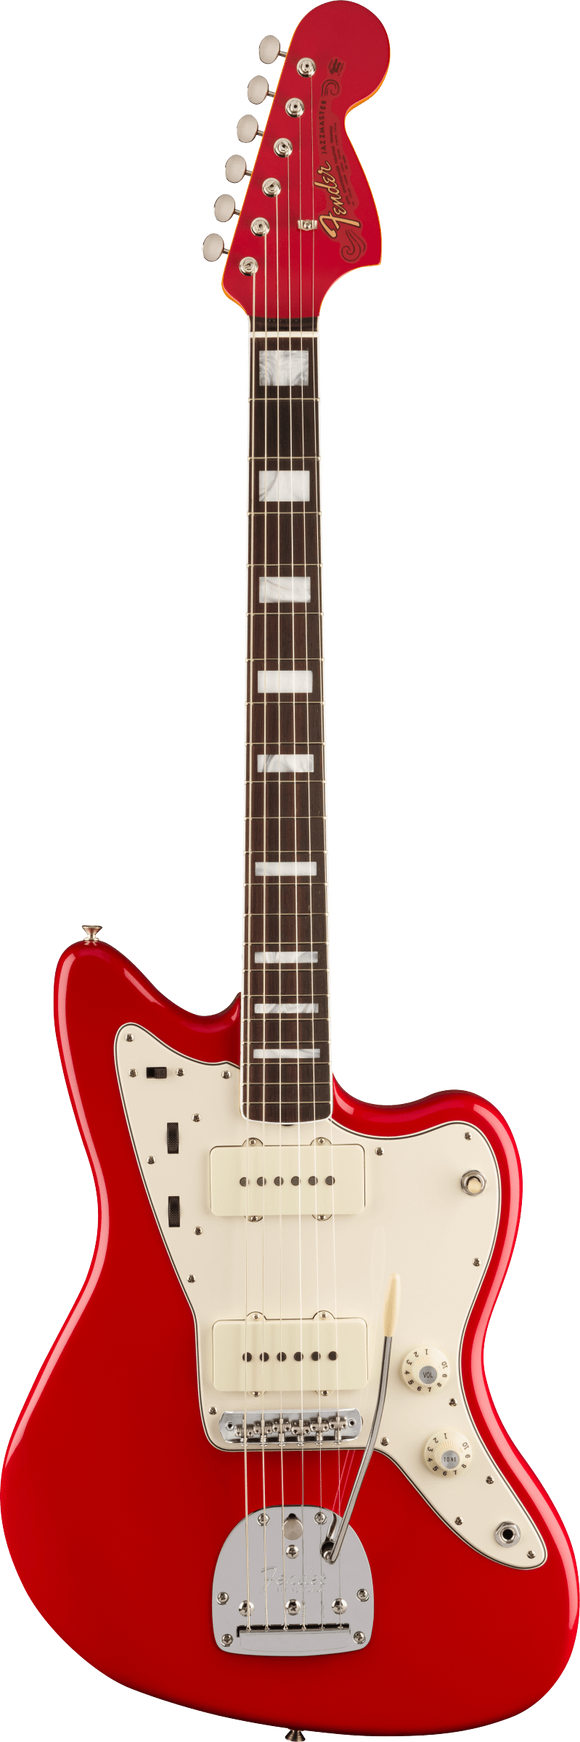 Fender American Vintage II 1966 Jazzmaster, Rosewood Fingerboard, Dakota Red